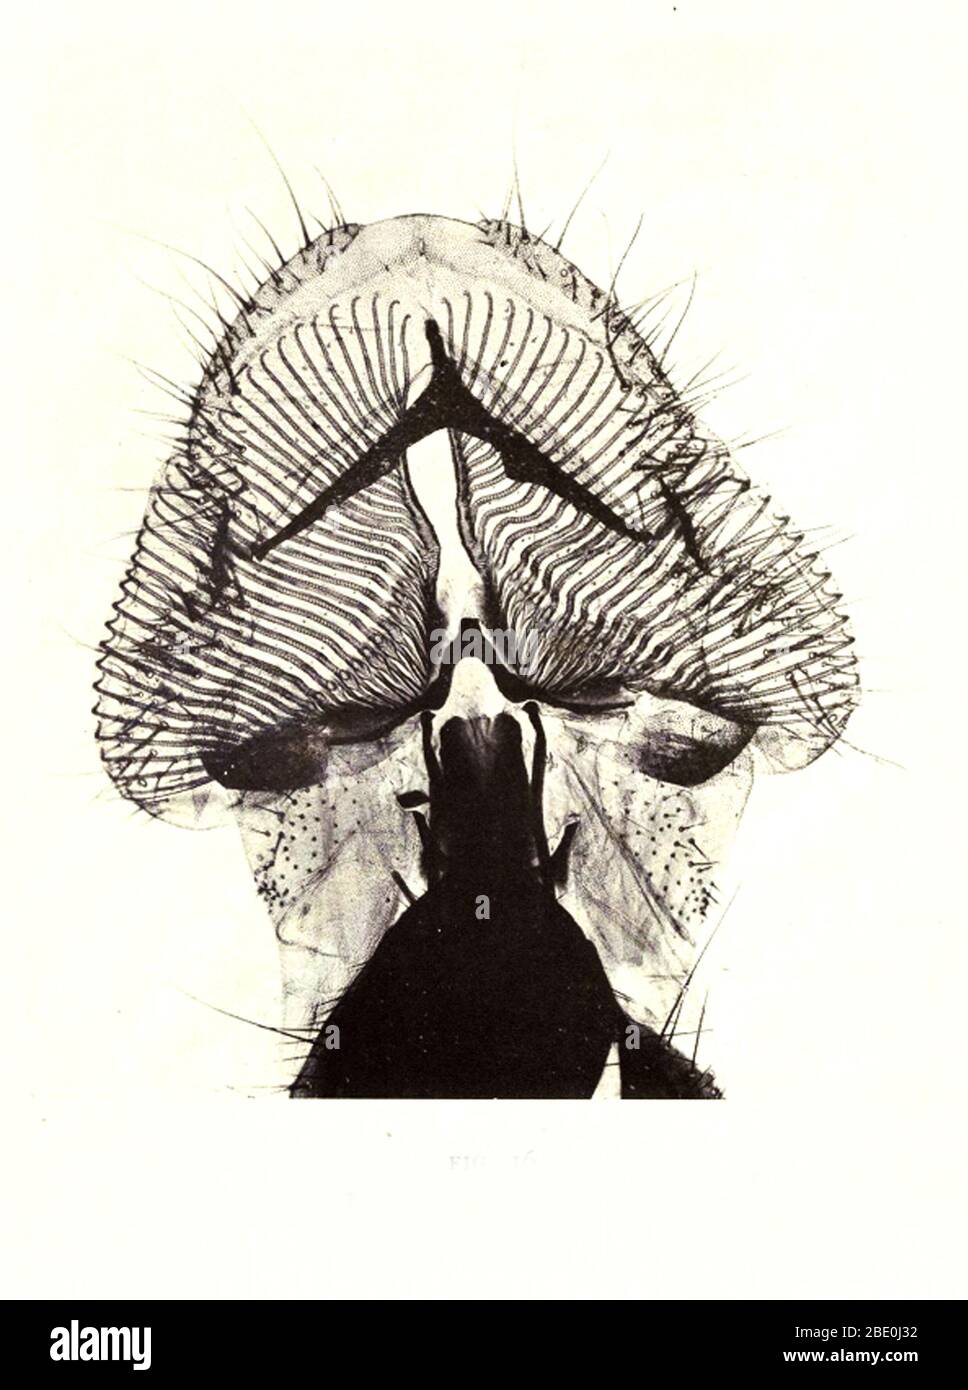 Proboscis der Blow-Fly. Vergrößerung: 40fach. Fotomikrograph von Arthur E Smith in den frühen 1900er Jahren, mit einem kombinierten Mikroskop und Kamera. 1904 stellte die Royal Society in London eine Reihe von Smiths Fotomikrographen der Öffentlichkeit aus. Sie wurden später 1909 in einem Buch mit dem Titel "Nature Through Microscope & Camera" veröffentlicht. Sie waren die ersten Beispiele für die Photomikroskopie, die viele je gesehen hatten. Stockfoto